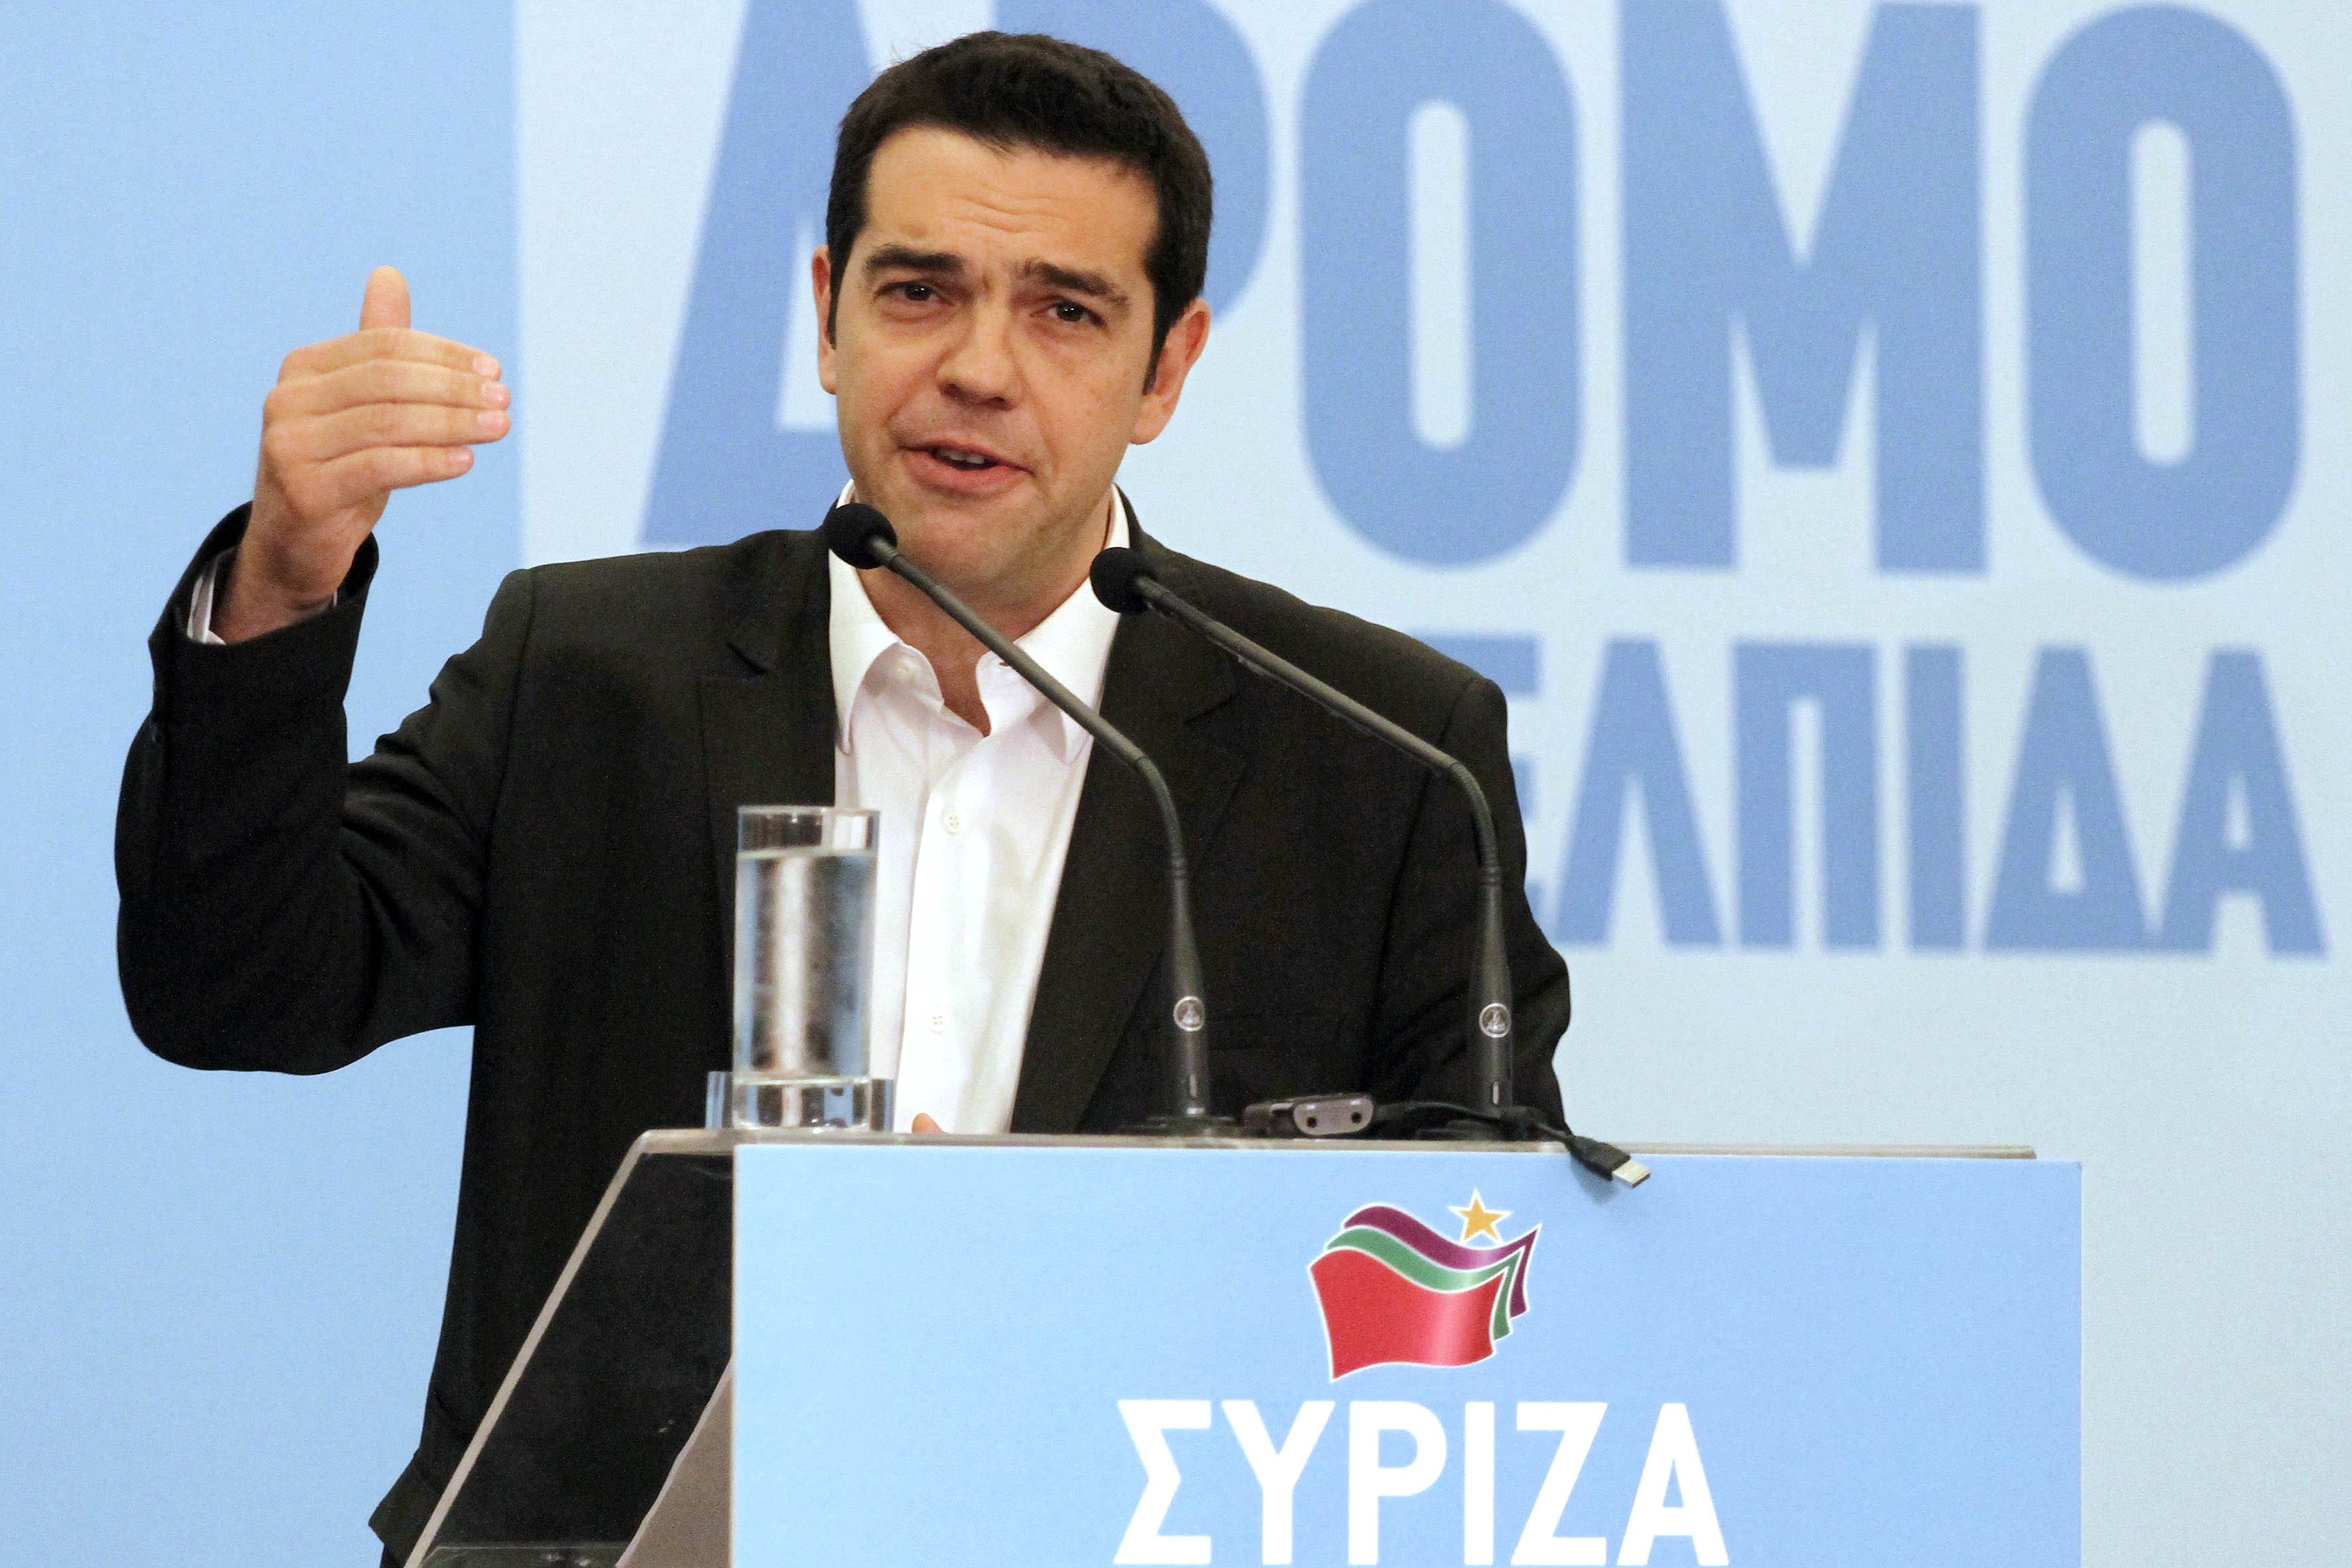 Τι θα συζητηθεί στην πανελλαδική συνδιάσκεψη του ΣΥΡΙΖΑ